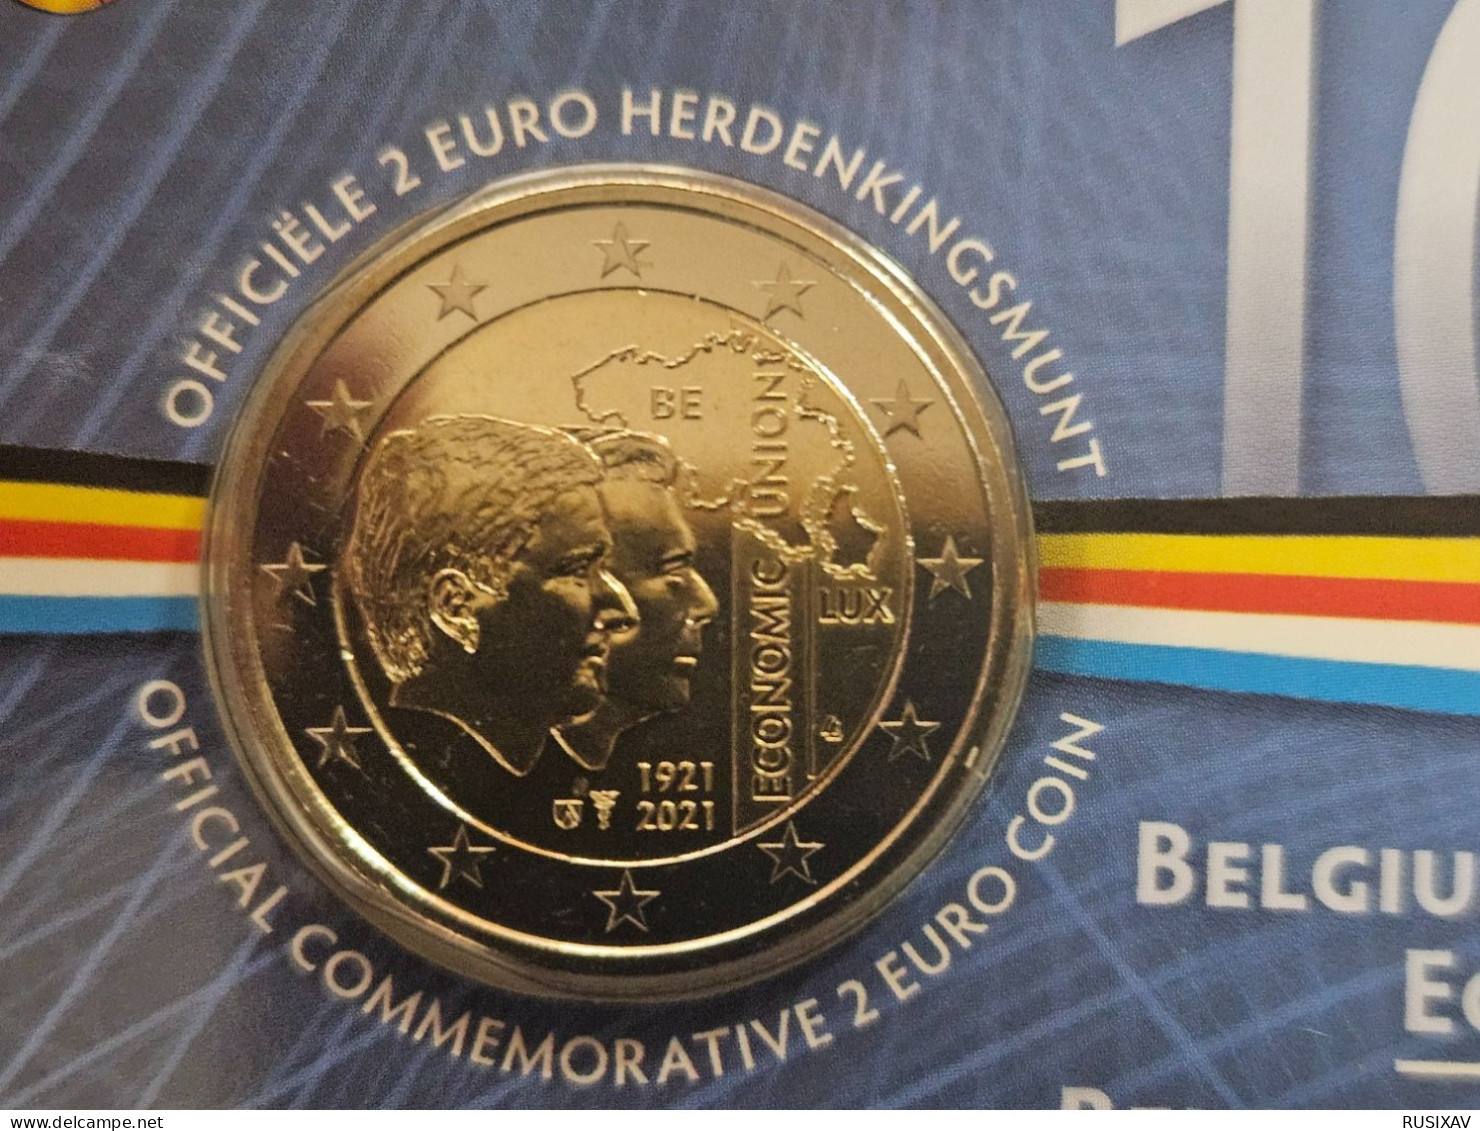 Belgique 2021 Coincard 2 Euros Belgique 2021 Union économique - Version Flamand - Belgien